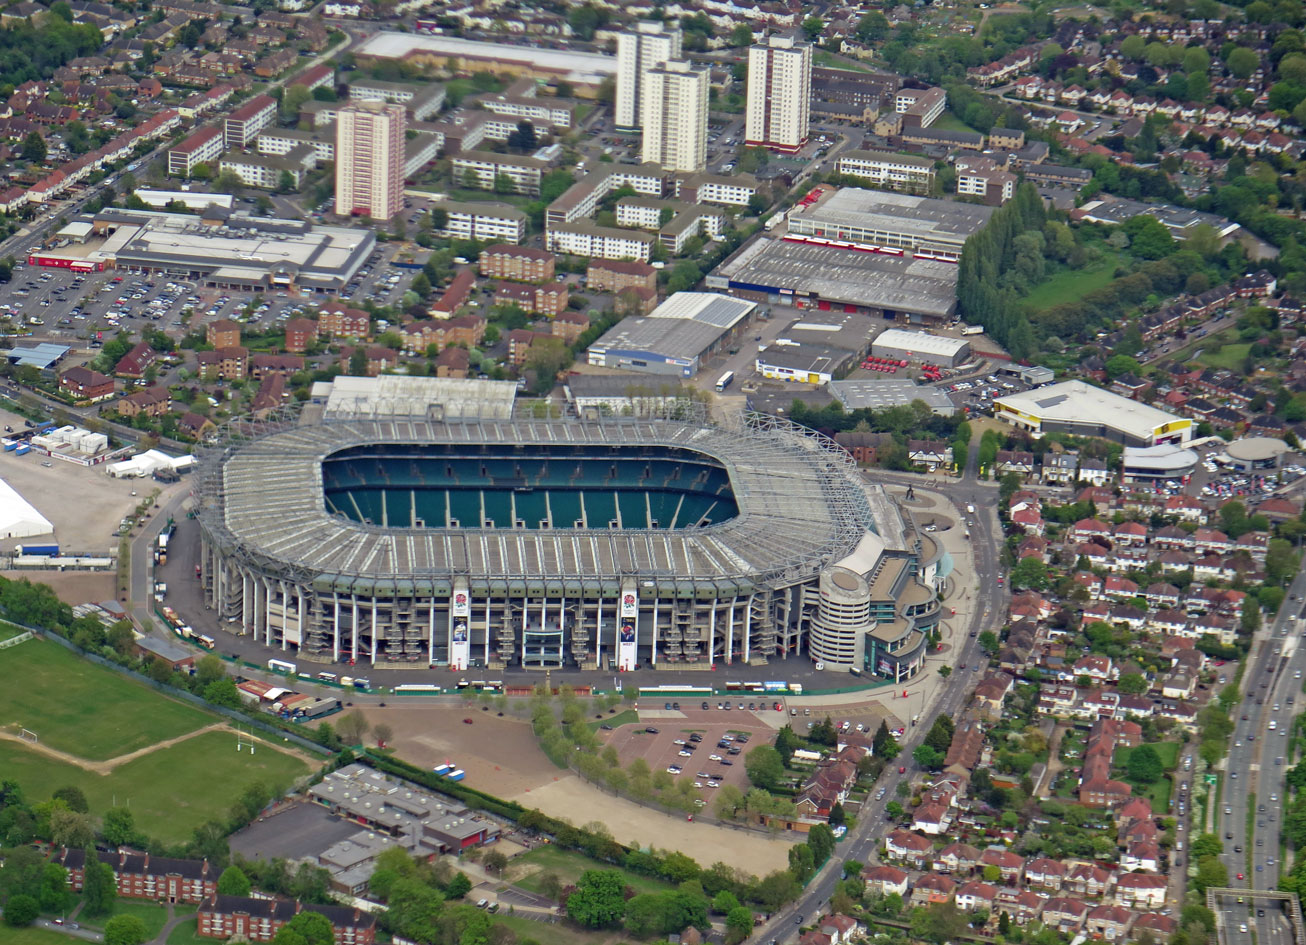 Ist das nicht das berühmt-berüchtigte Wembley Stadion?